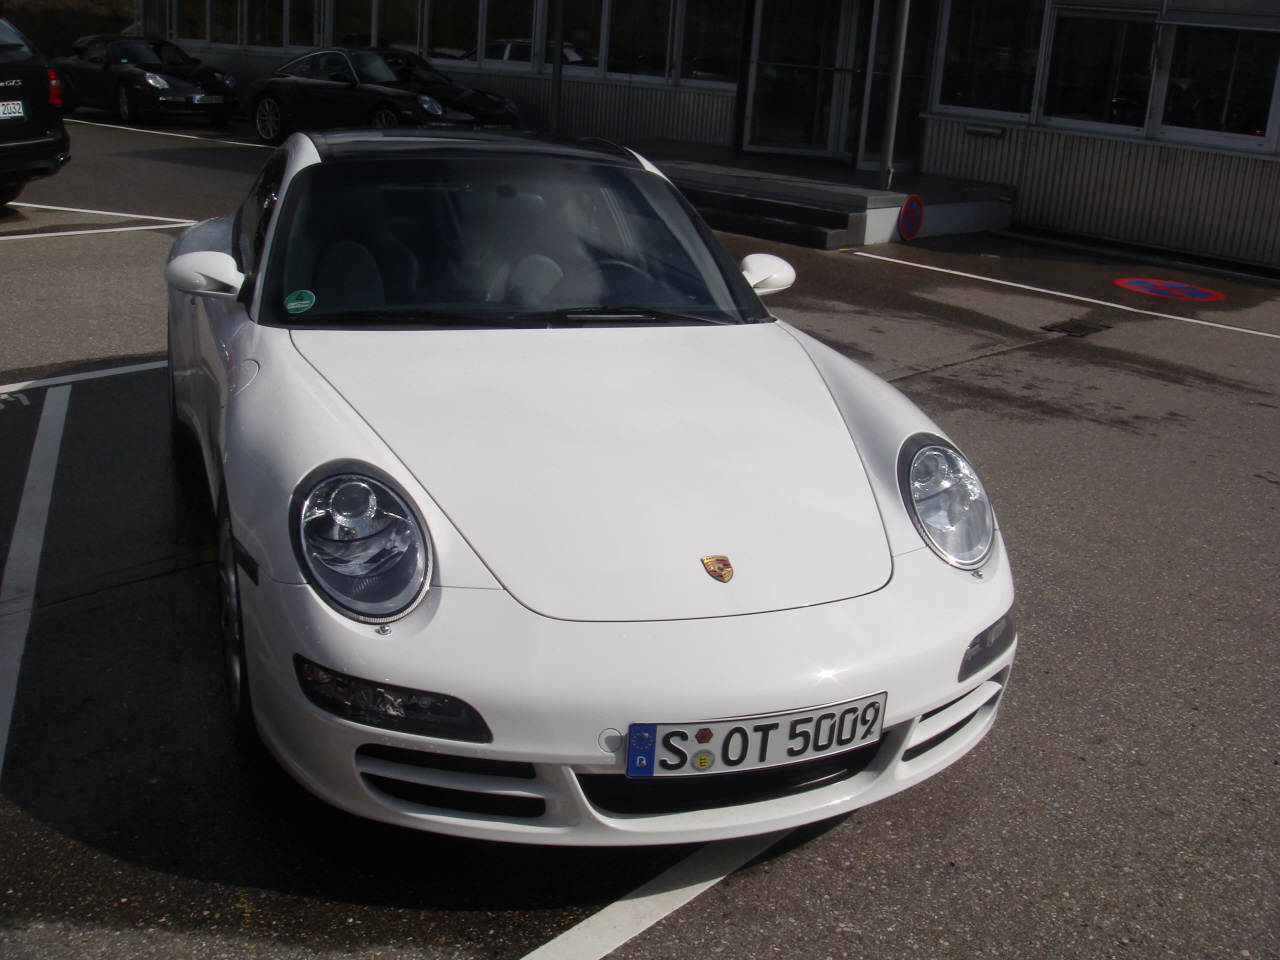 Visita Rapida a Porsche / Fast Visit to Porsche-carreracabriolet.JPG